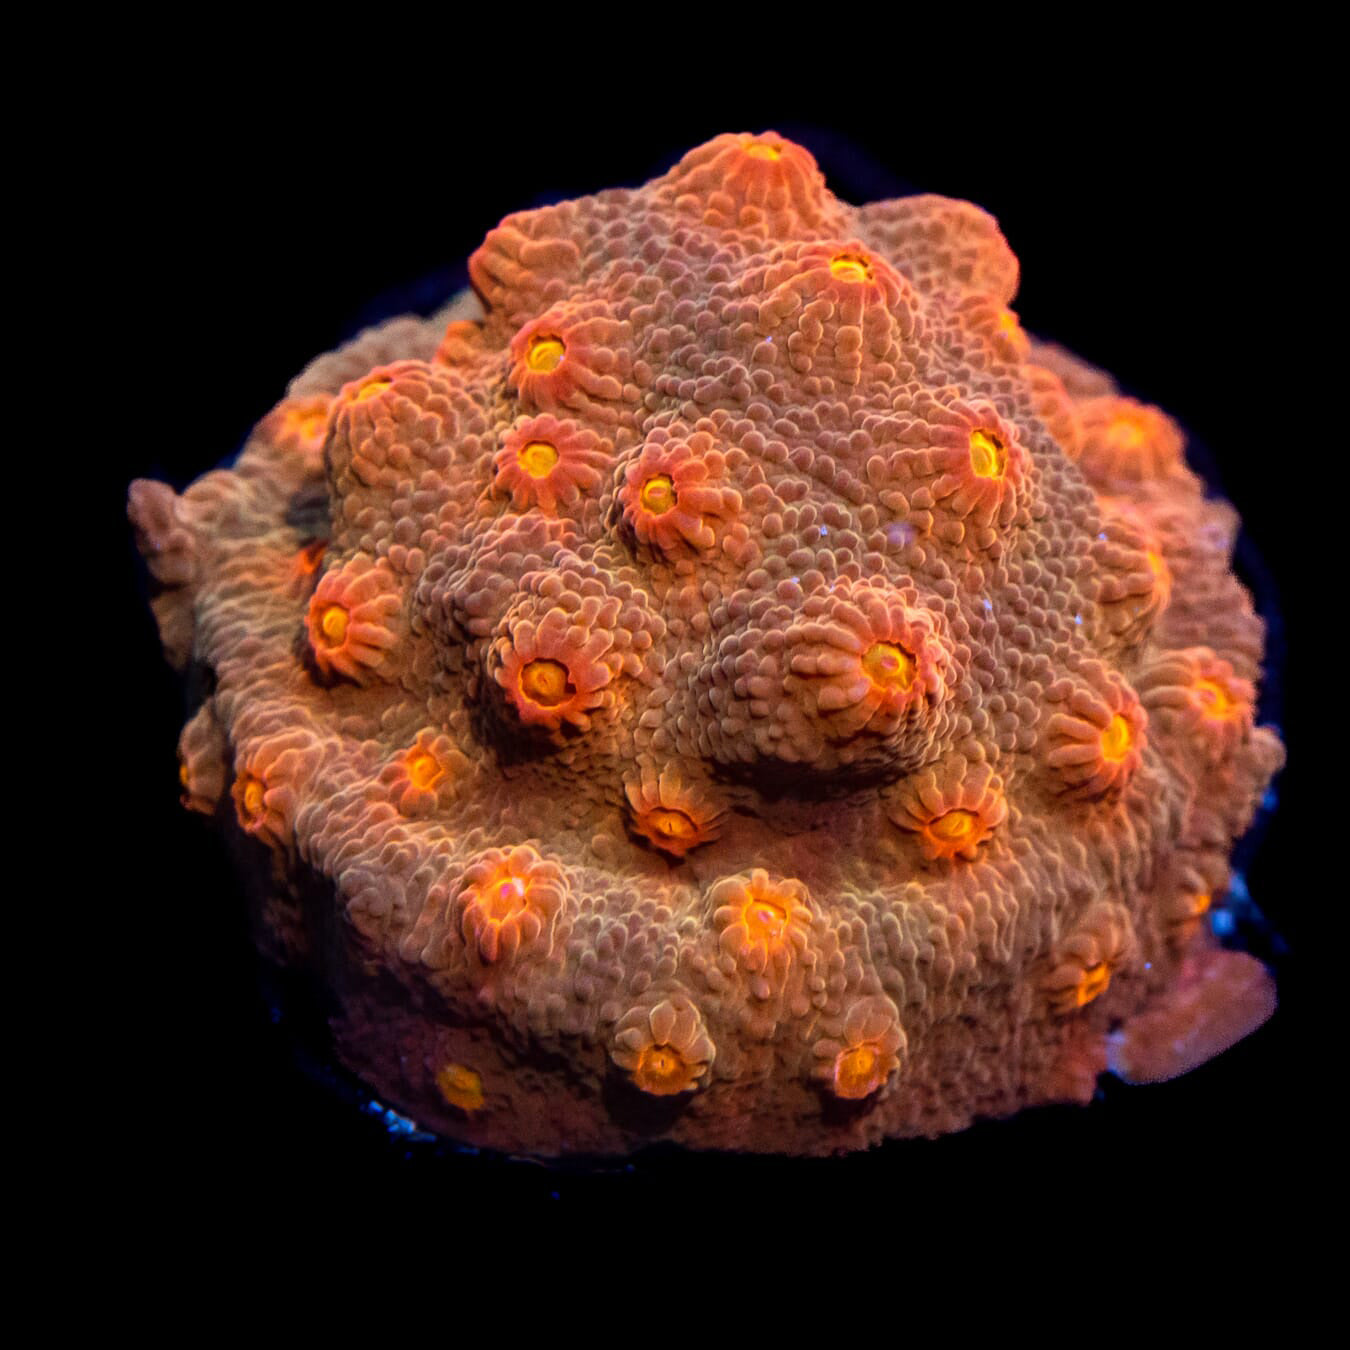 WWC Flicka Flame Cyphastrea Coral